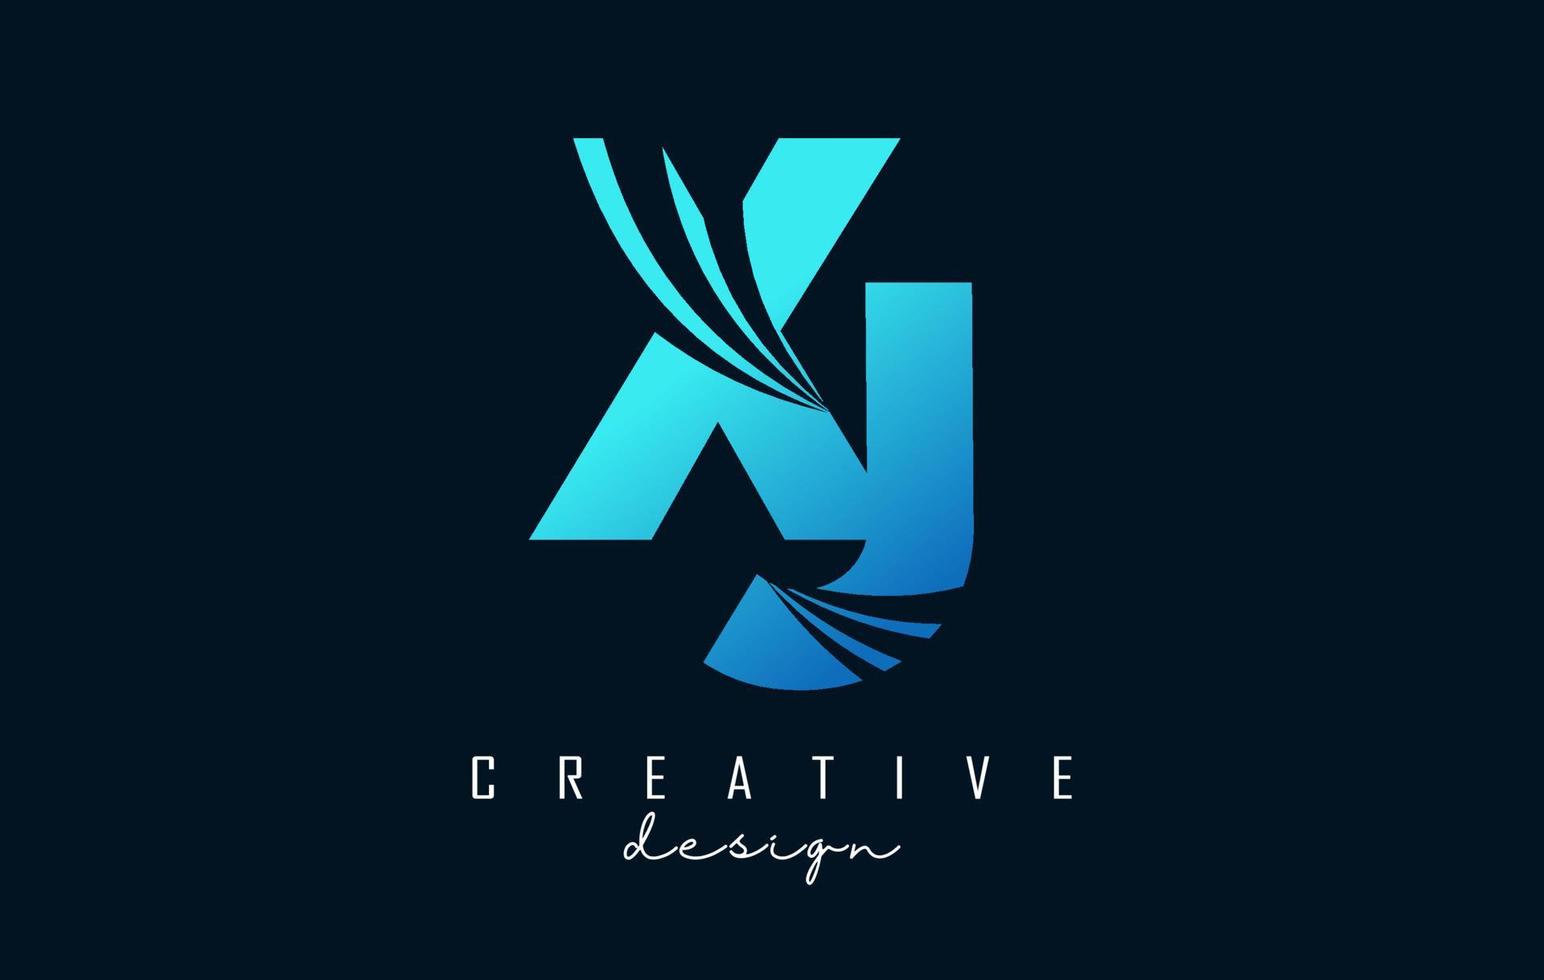 kreative blaue buchstaben xj xj logo mit führenden linien und straßenkonzeptdesign. Buchstaben mit geometrischem Design. vektor